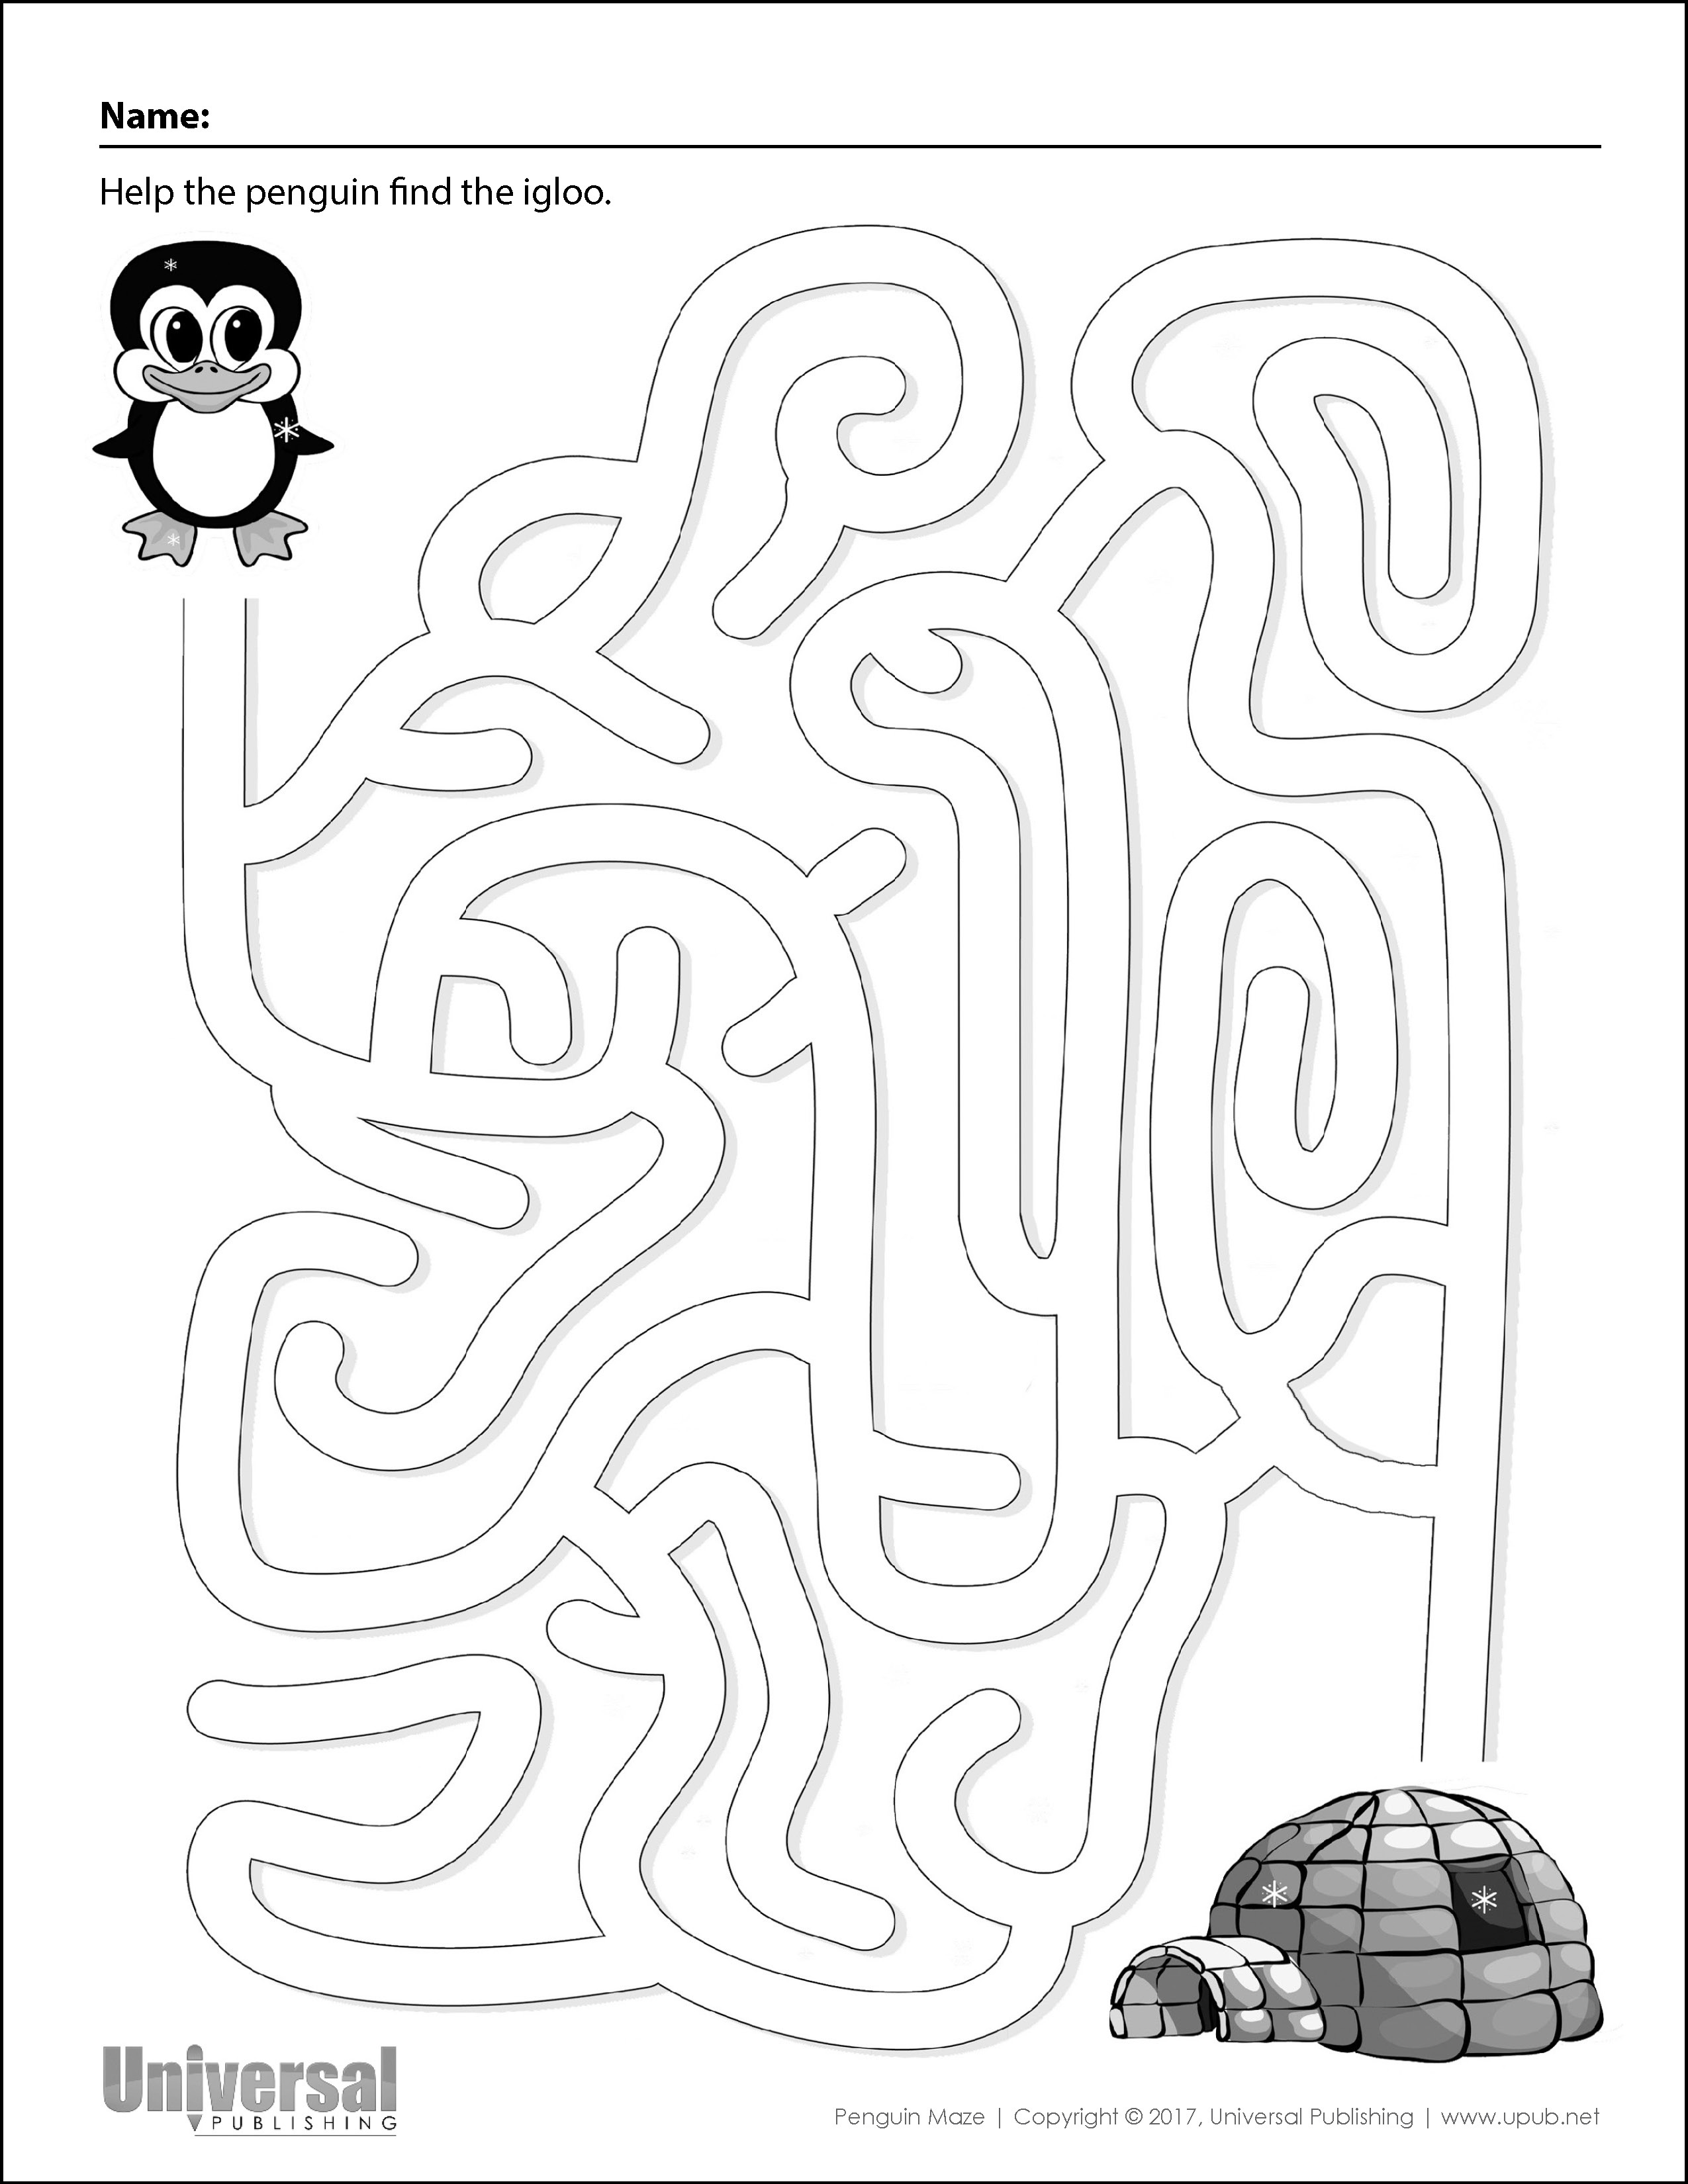 Penguin Maze - Universal Publishing Blog